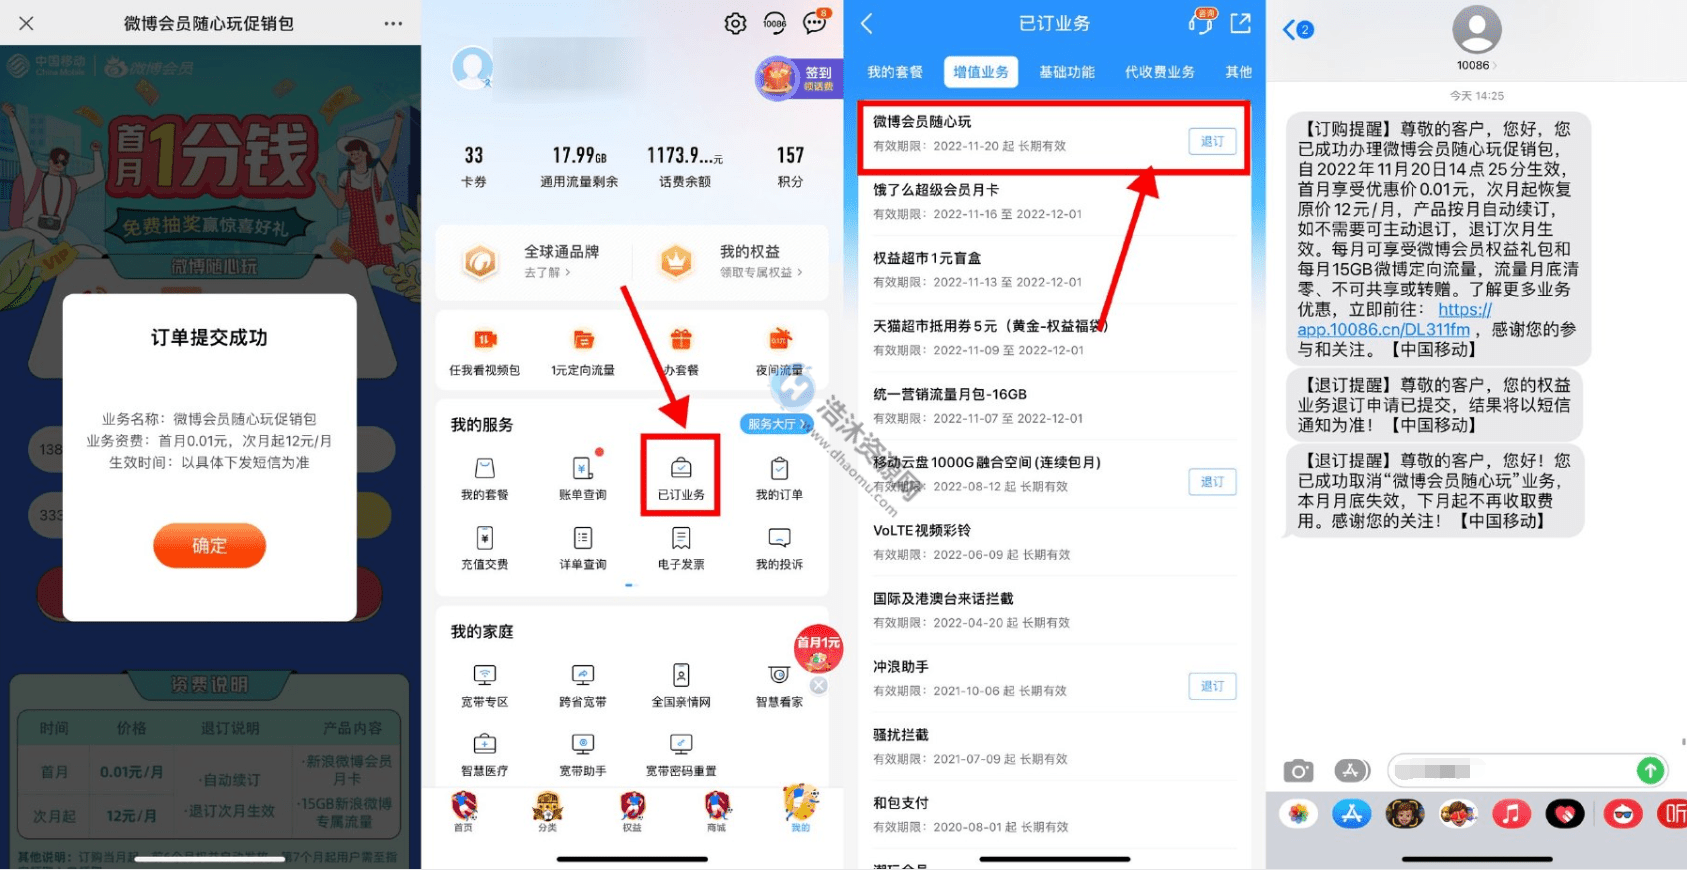 中国移动用户微博会员随心玩促销包0.01元撸取微博会员月卡